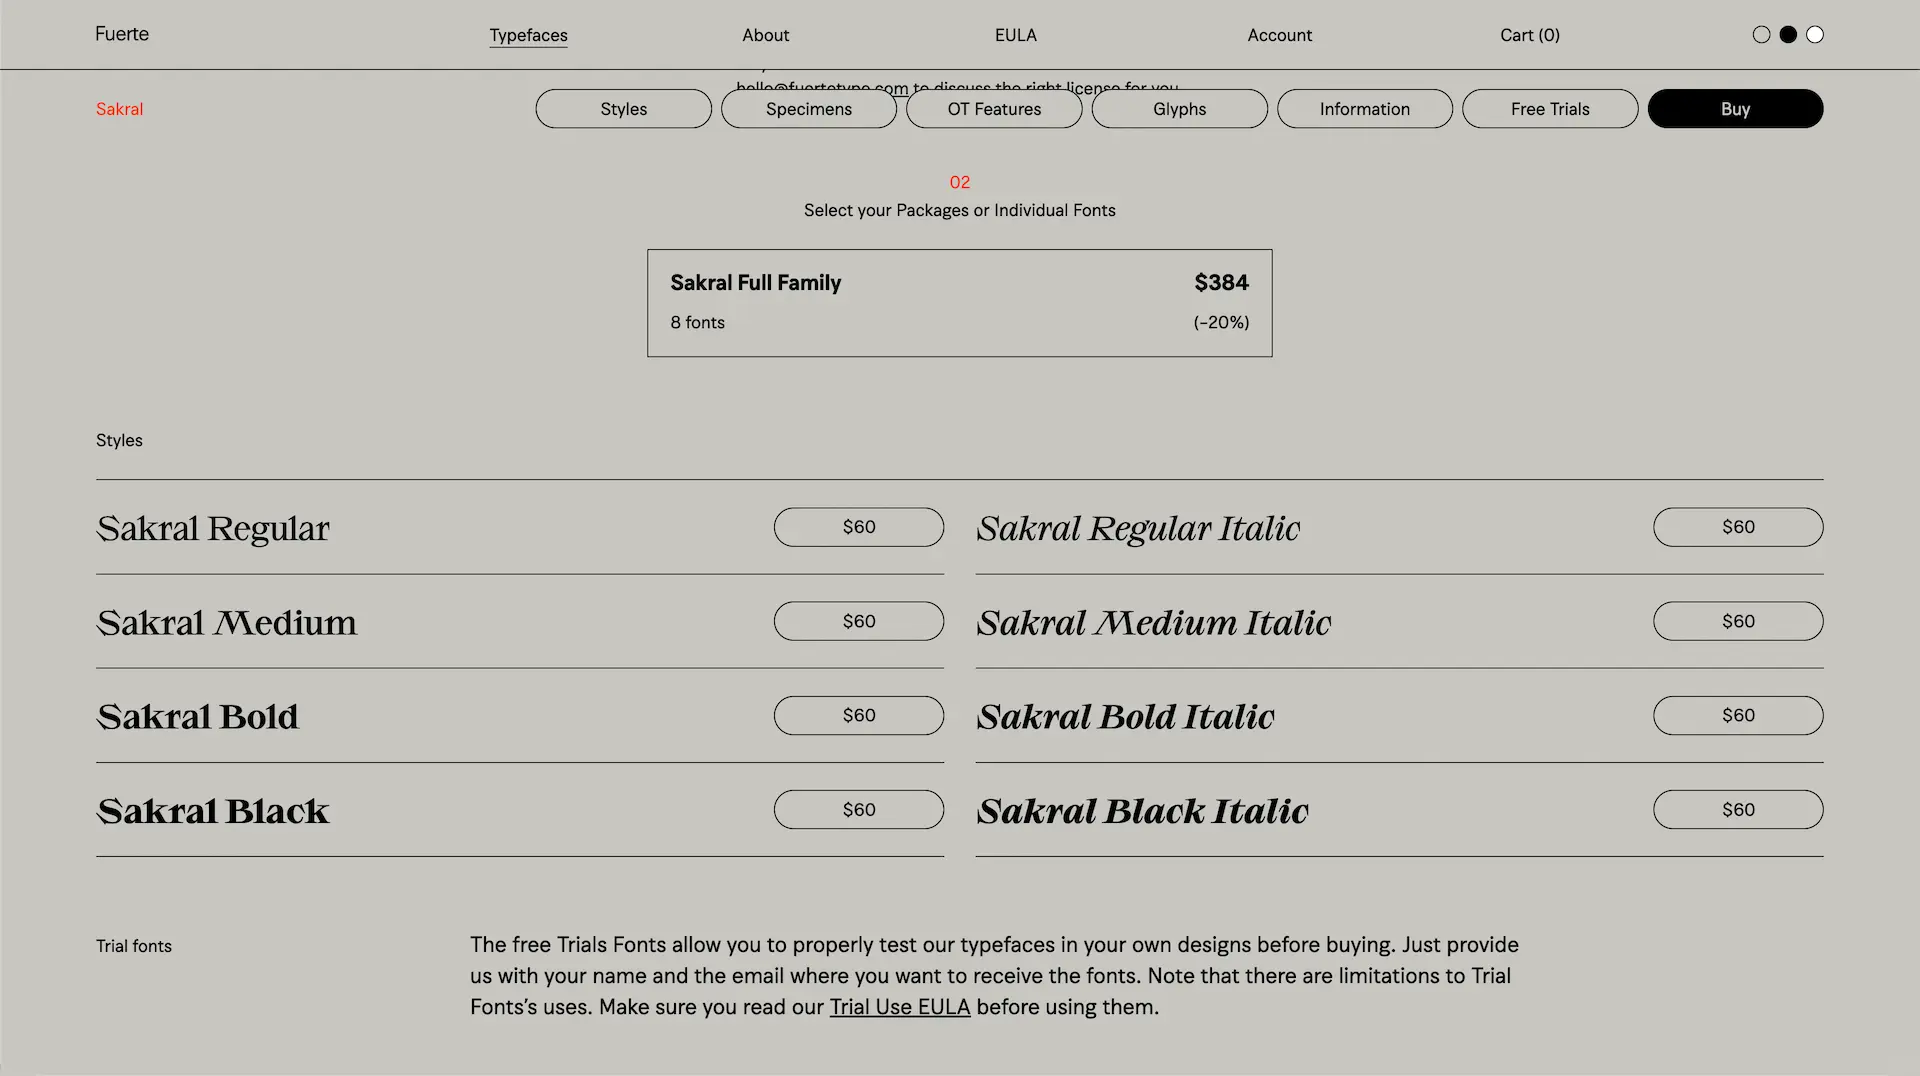 Detalle de visualización de precios y licencias en la web de Fuertetype foundry